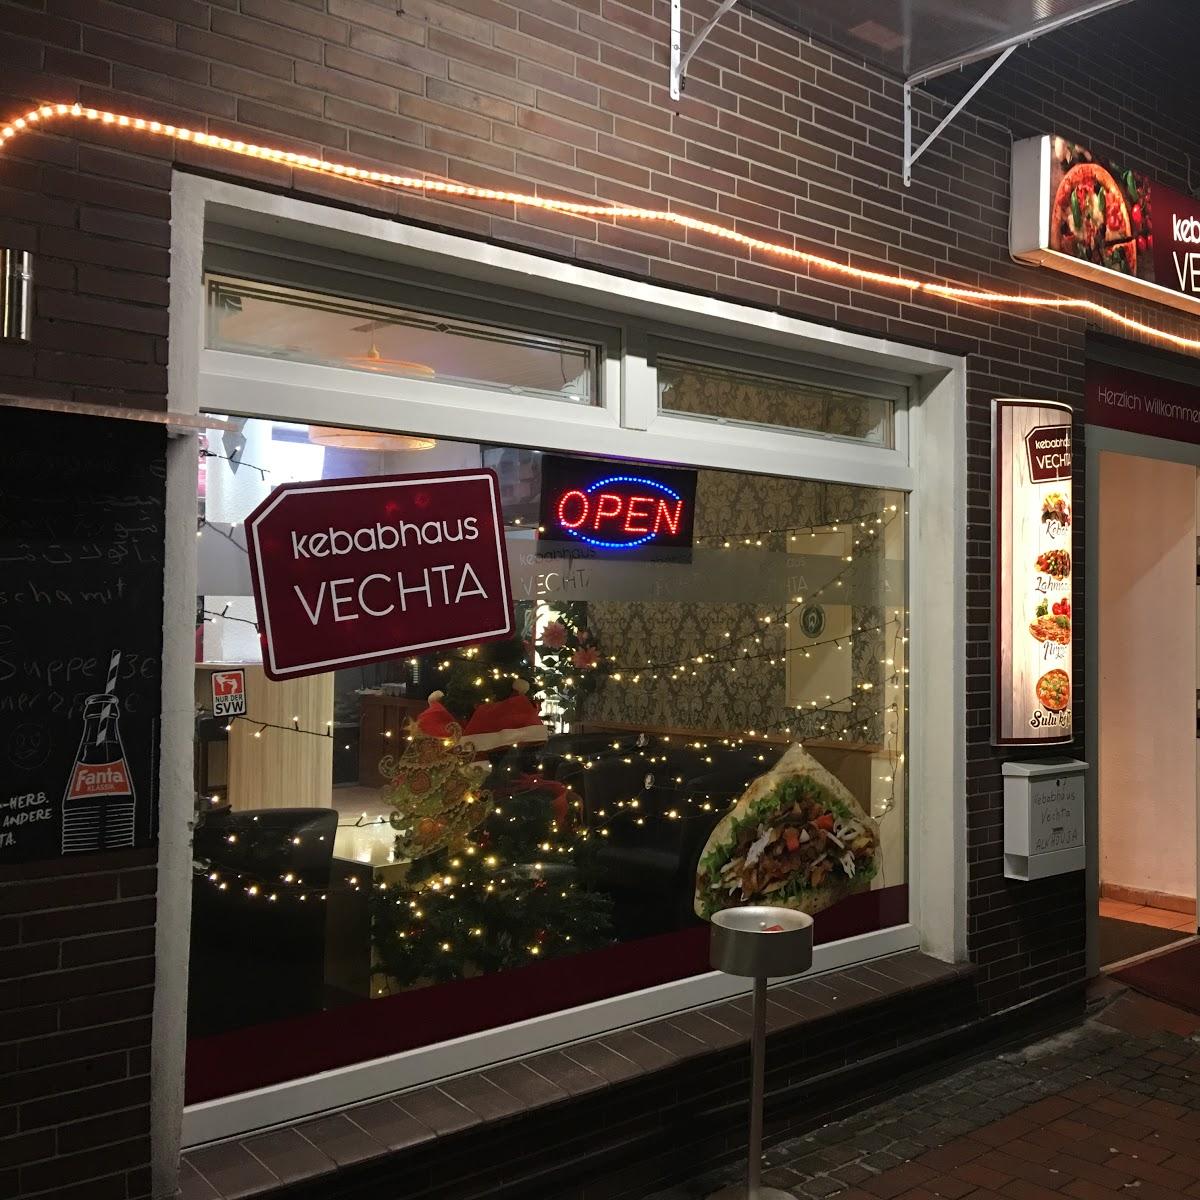 Restaurant "Kebabhaus & Pizzeria" in Vechta